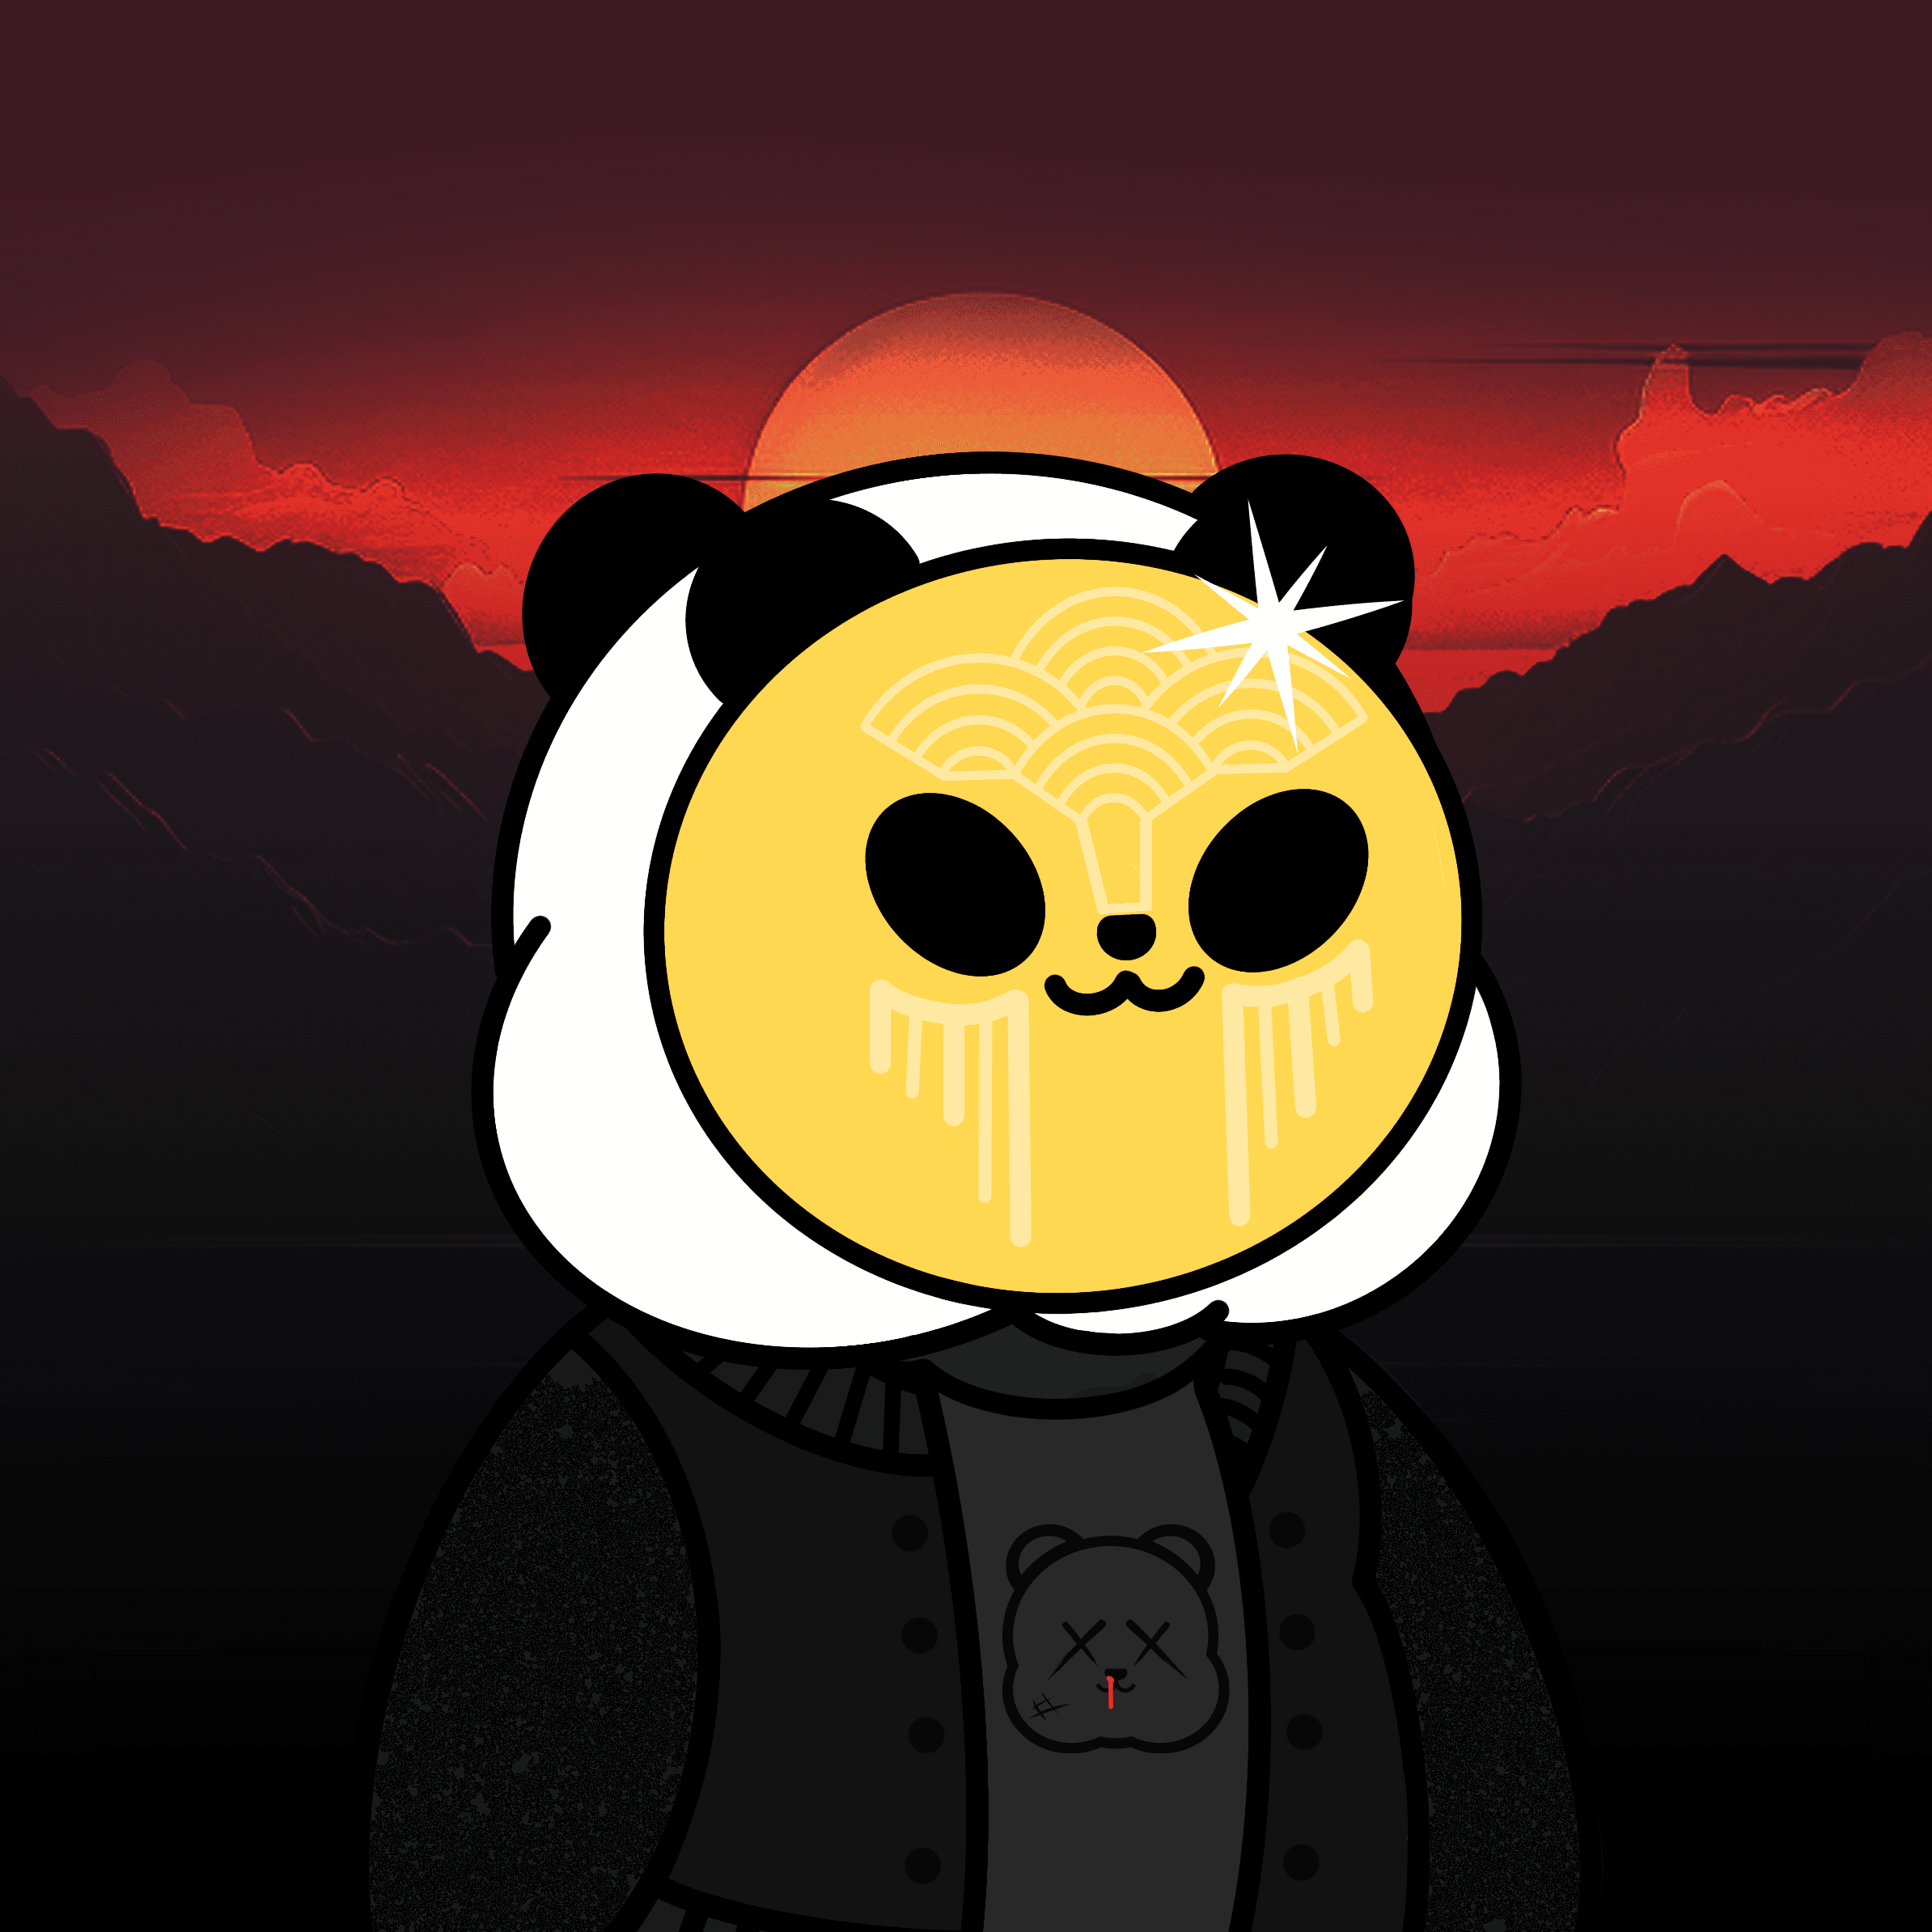 Kanpai Panda